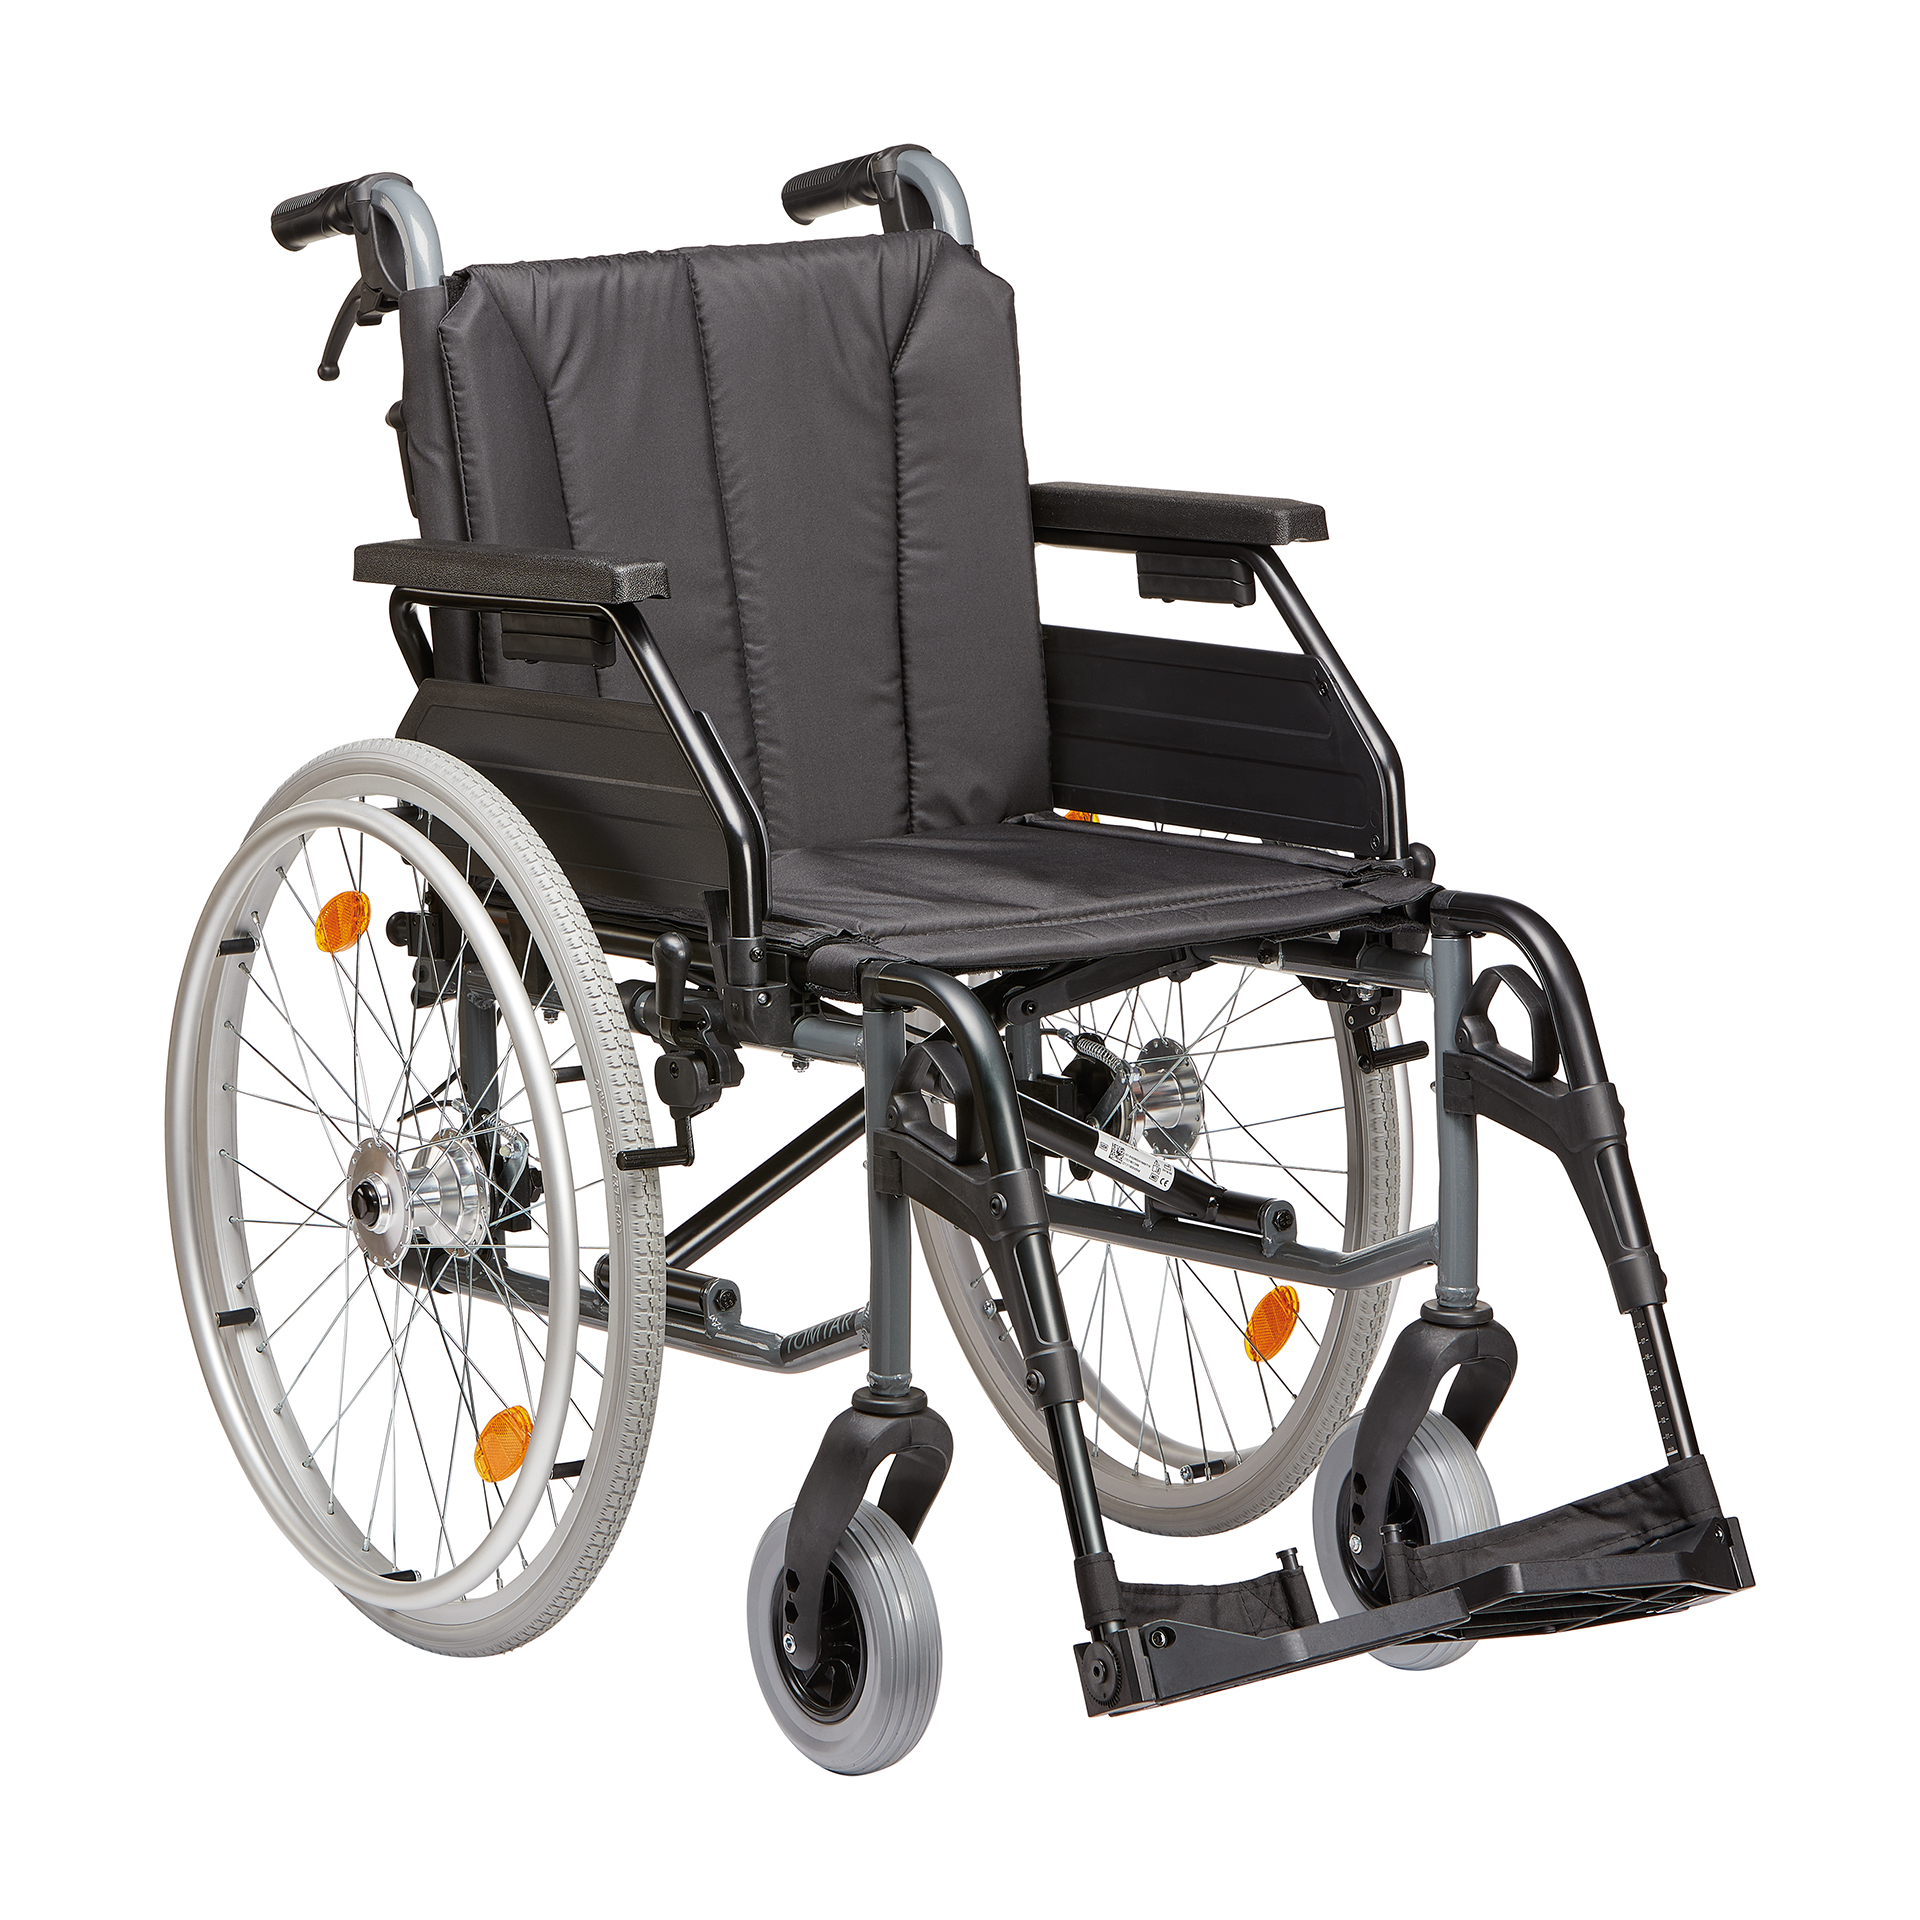 Dietz TOMTAR MR-LG Rollstuhl mit Feststellbremse SB 48 cm